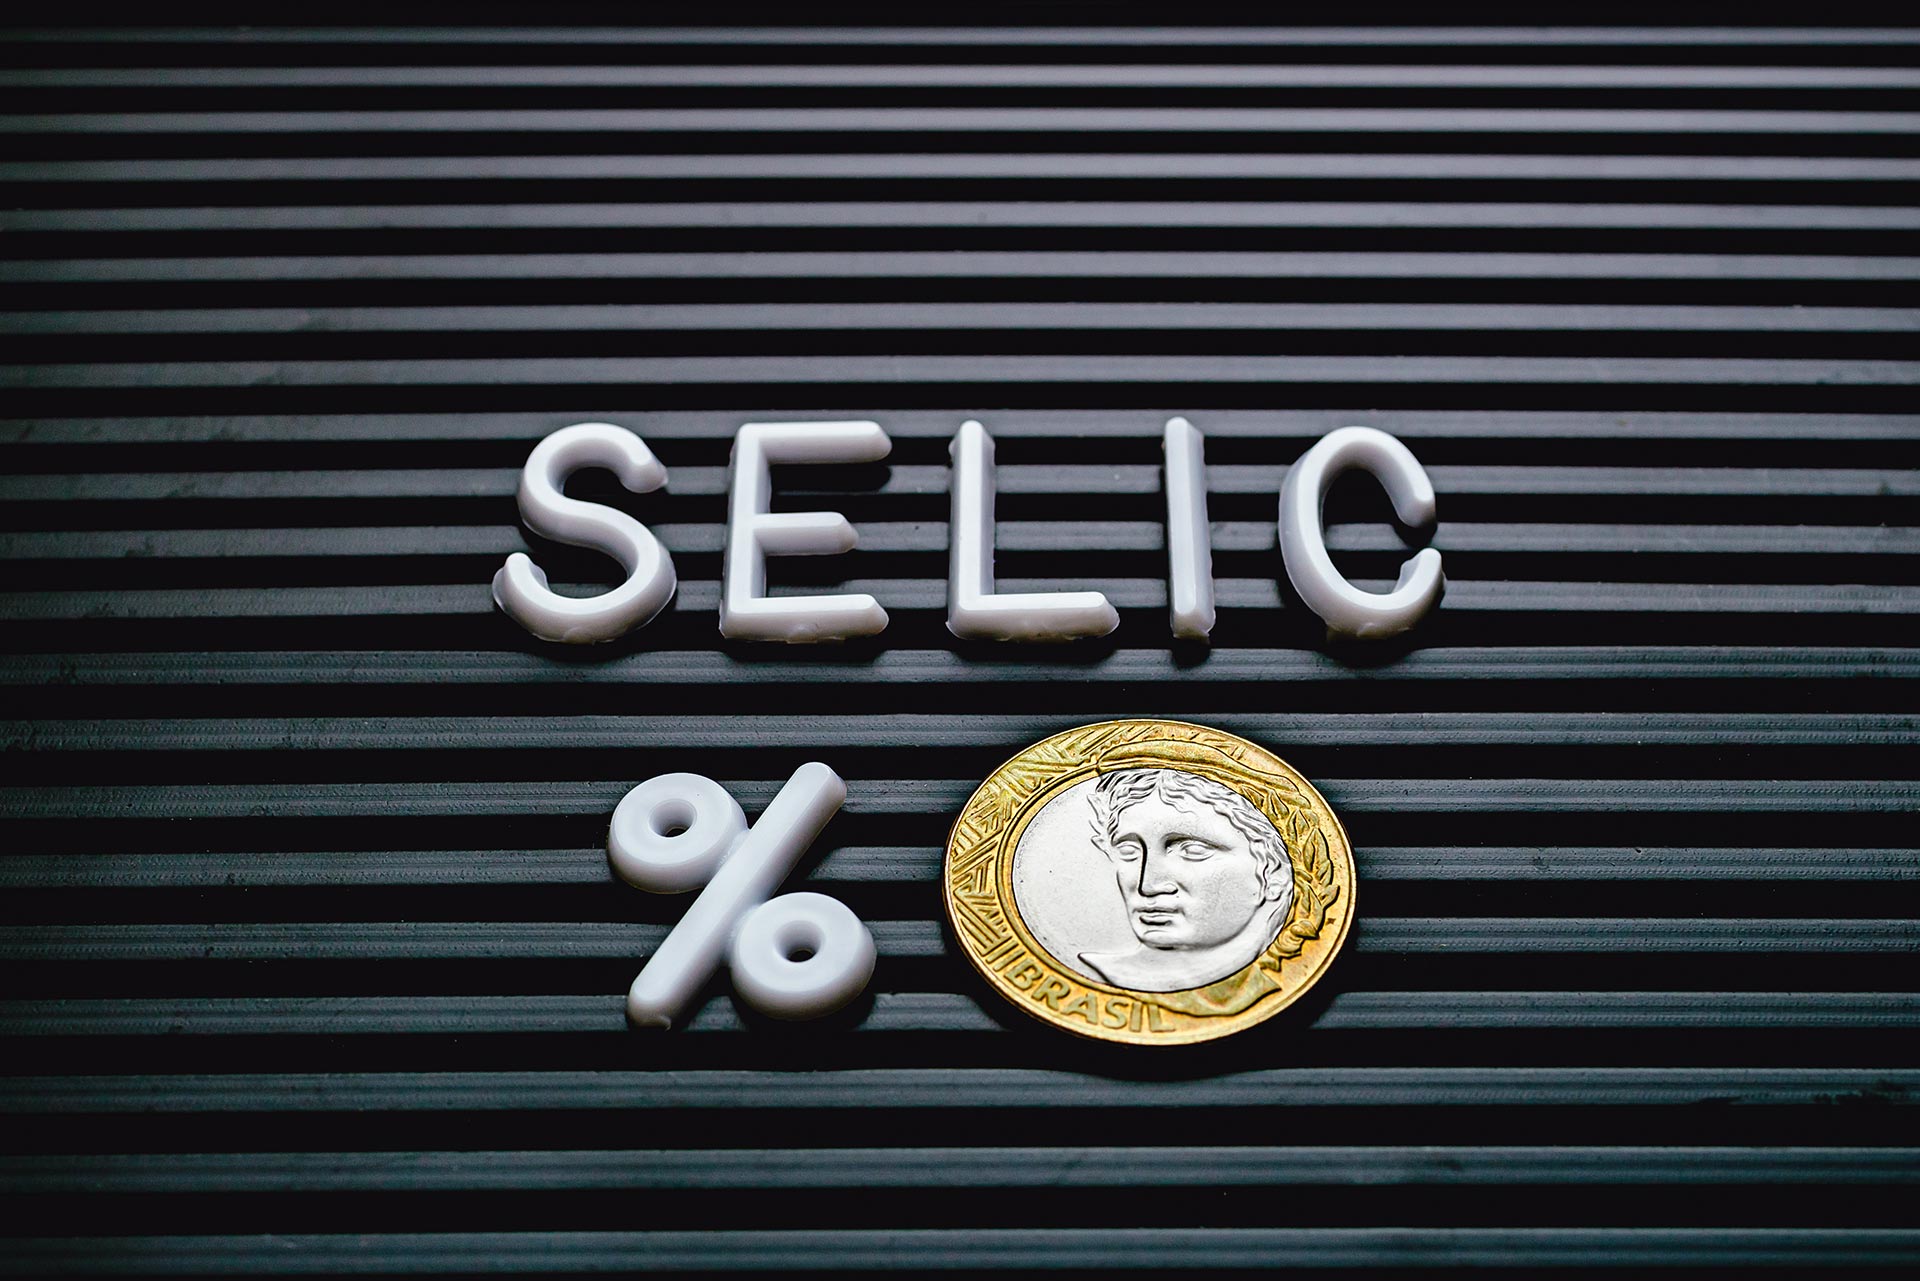 Taxa Selic em 12,75%, como isso pode afetar o bitcoin?